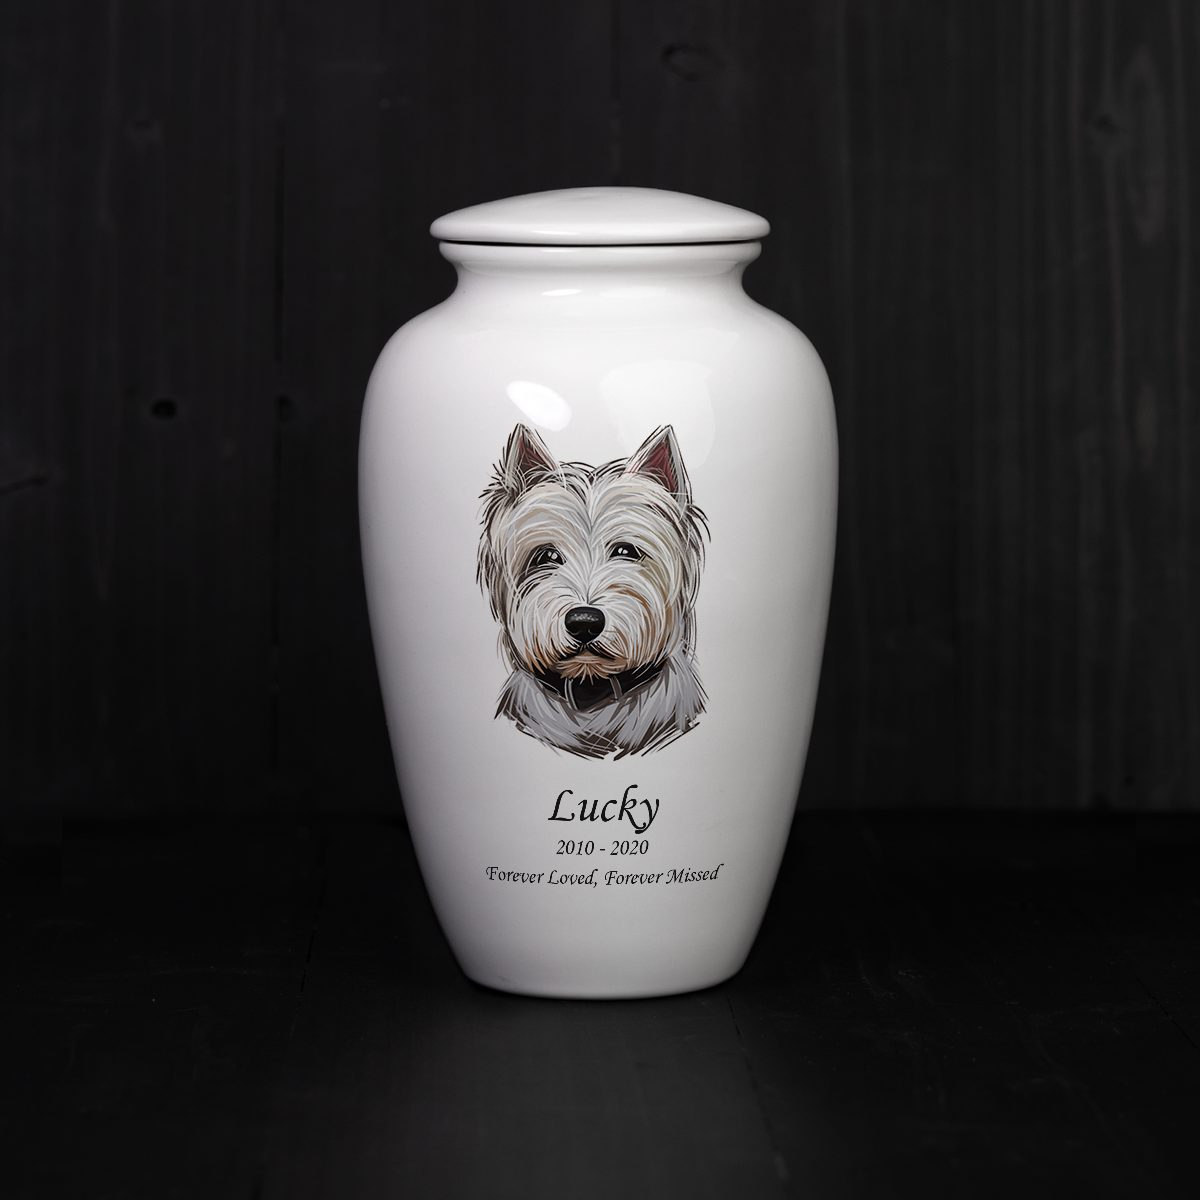 Scottish terrier ceramic crematin urn.